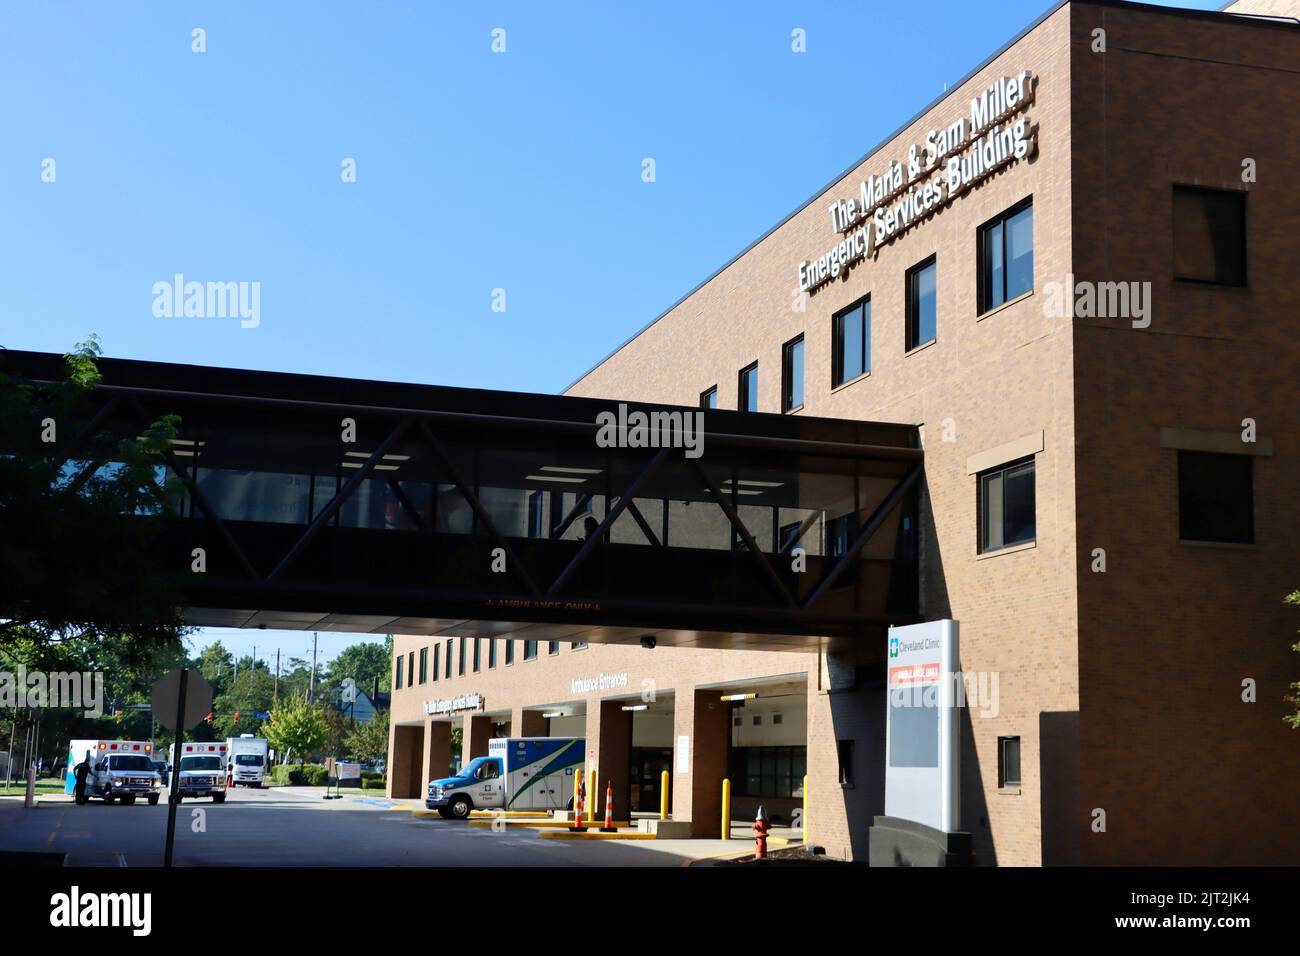 Das Maria & Sam Miller Notfalldienstgebäude in der Cleveland Clinic Stockfoto